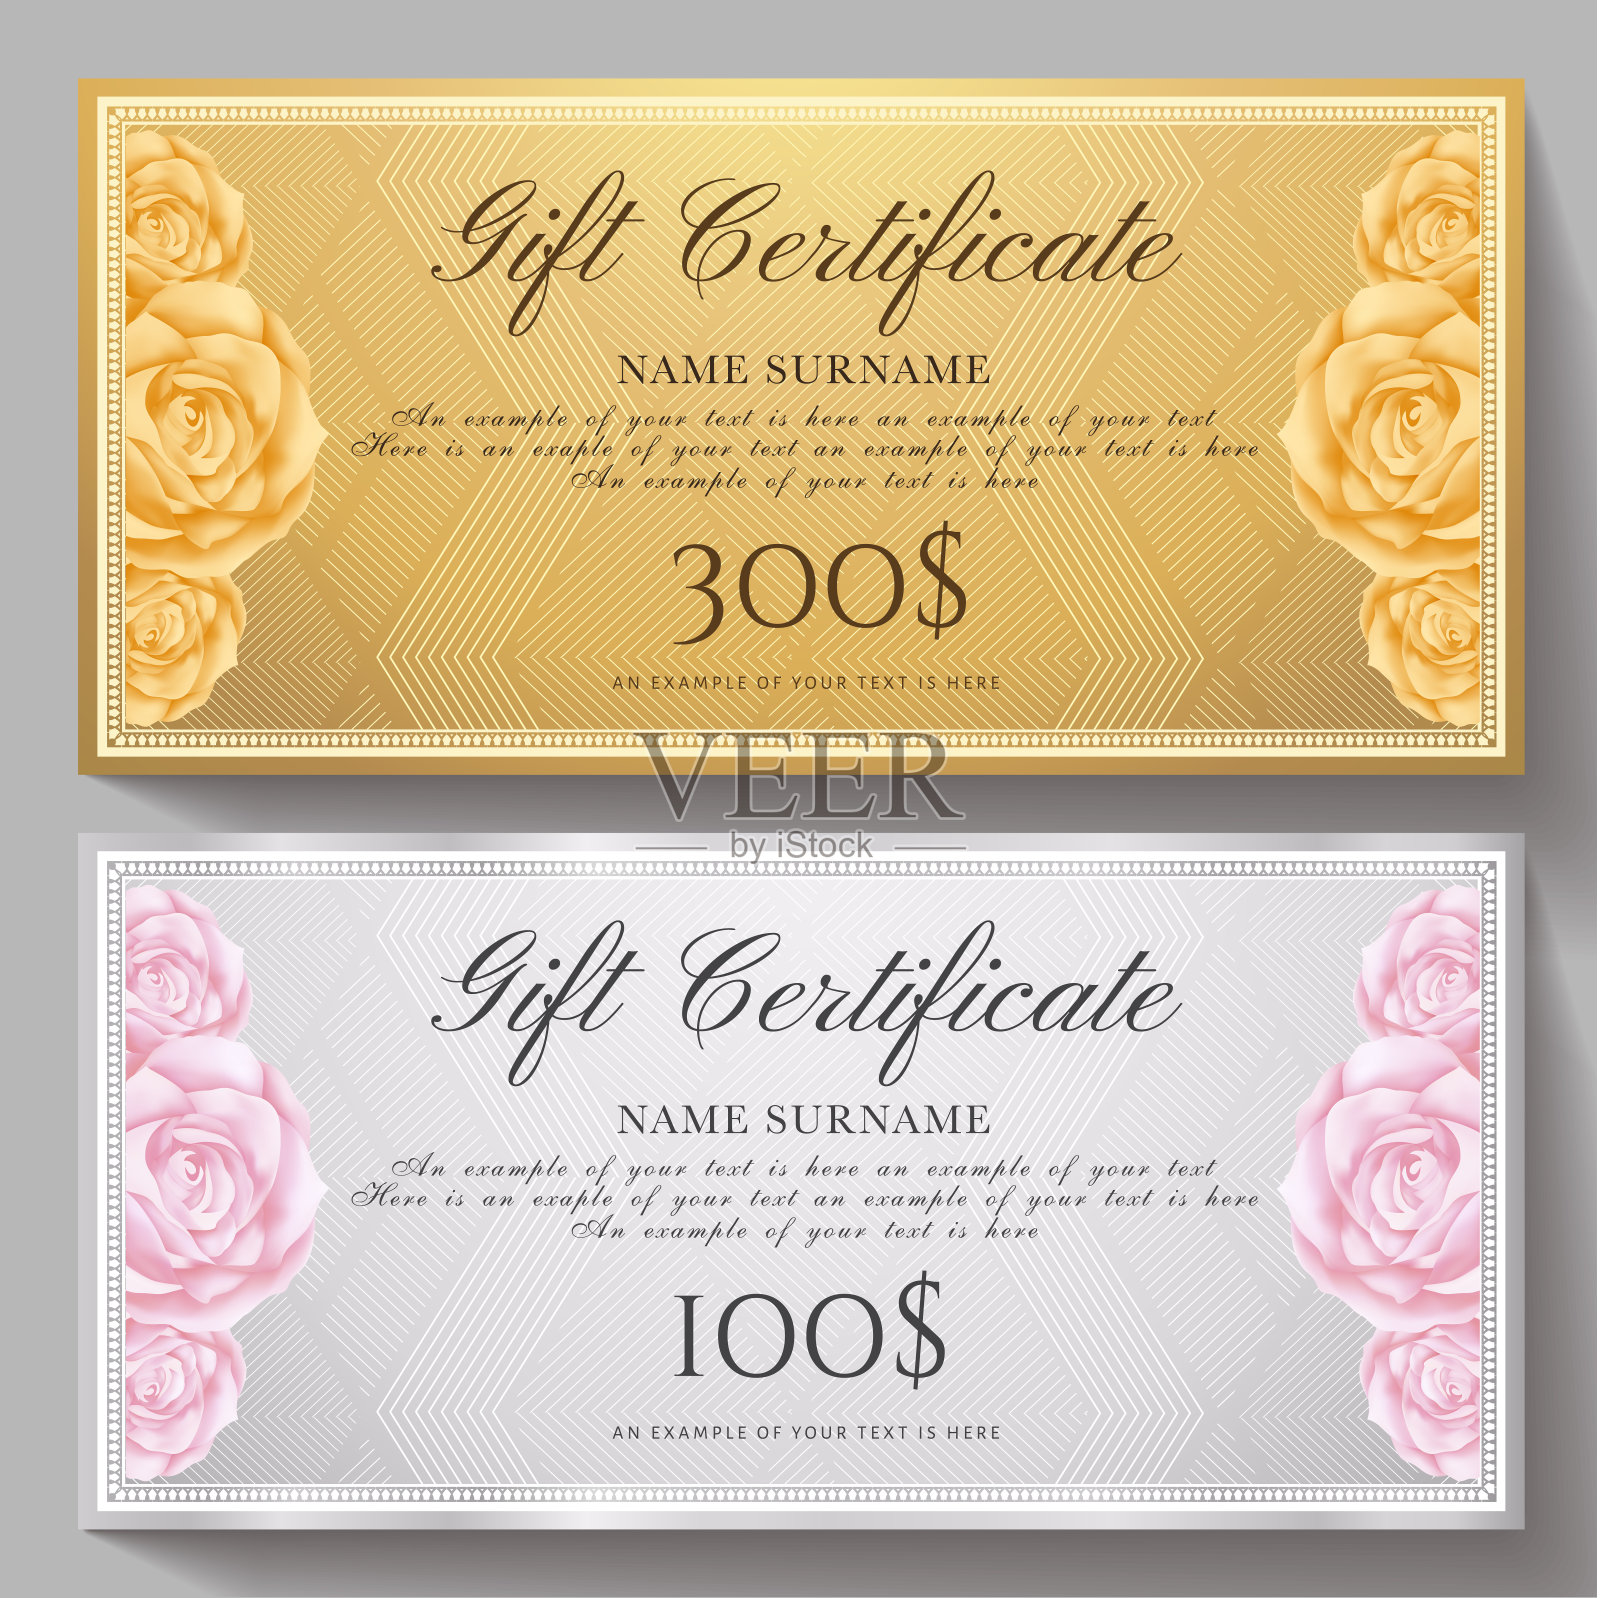 礼品券，礼券，礼券模板与鲜花玫瑰和金，银图案背景设计模板素材